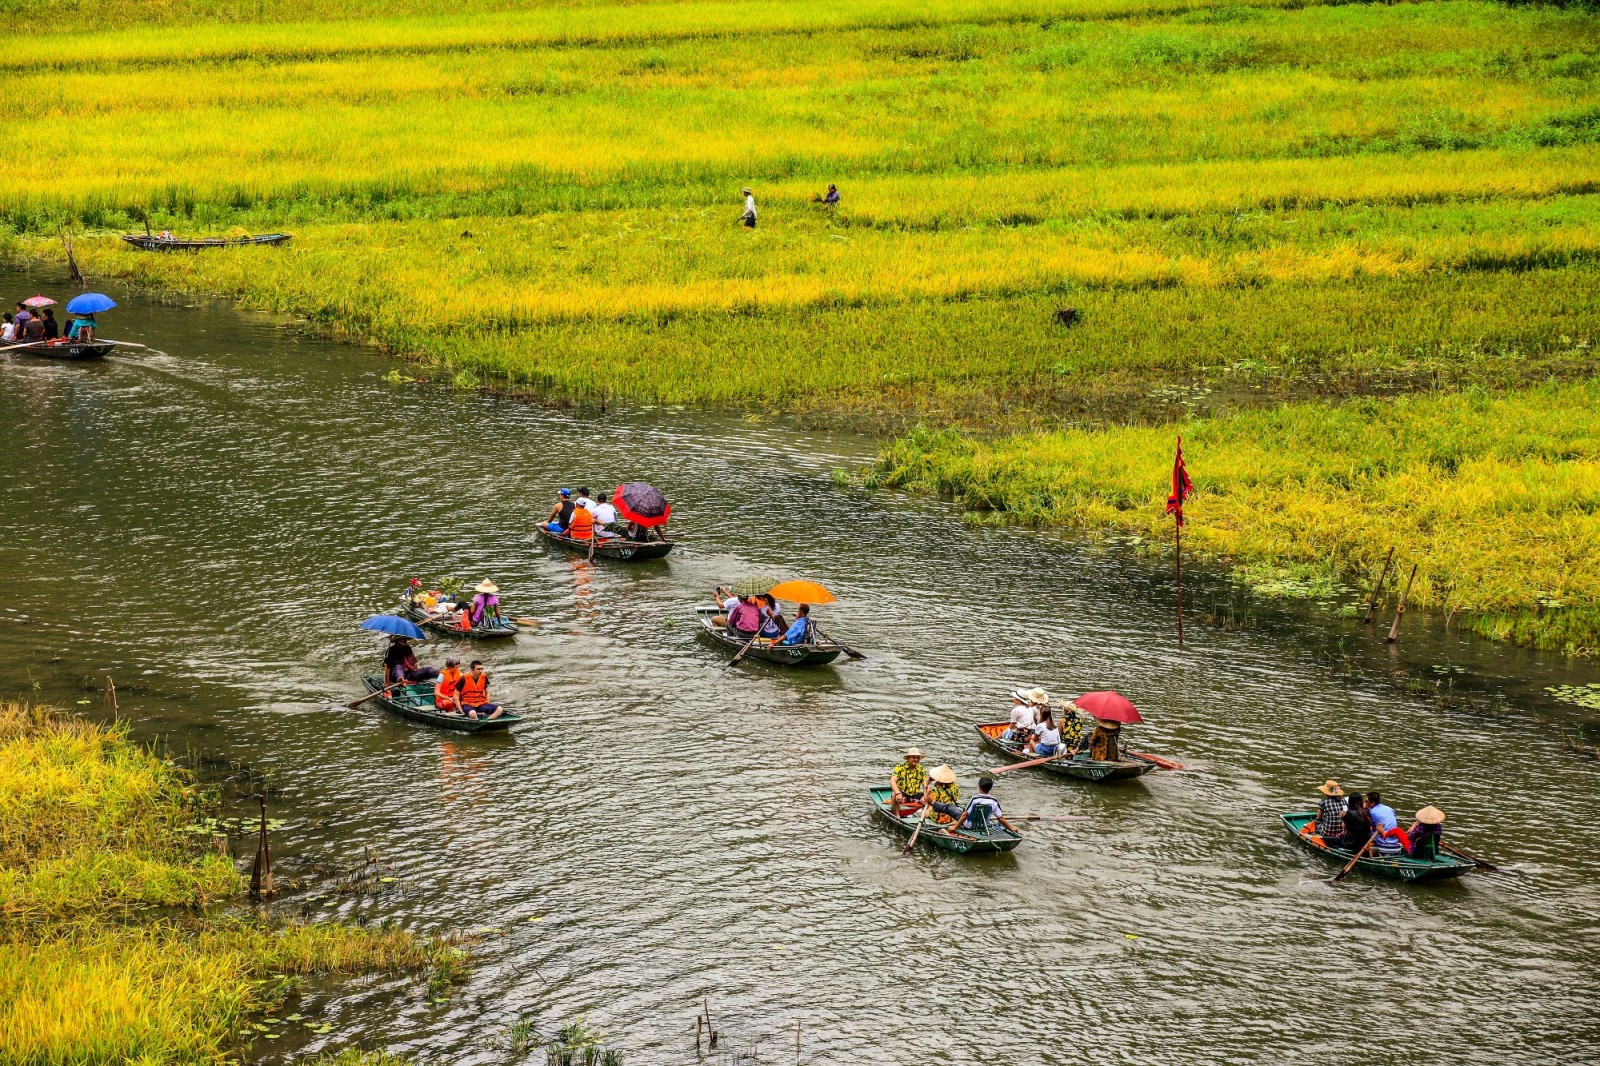 Dọc hai bên dòng sông Ngô Đồng là cánh đồng lúa thơ mộng khiến du khách mê mẩn khung cảnh nên thơ này khi một lần được ngồi trên chuyến đò du ngoạn giữa cánh đồng lúa chín vàng.